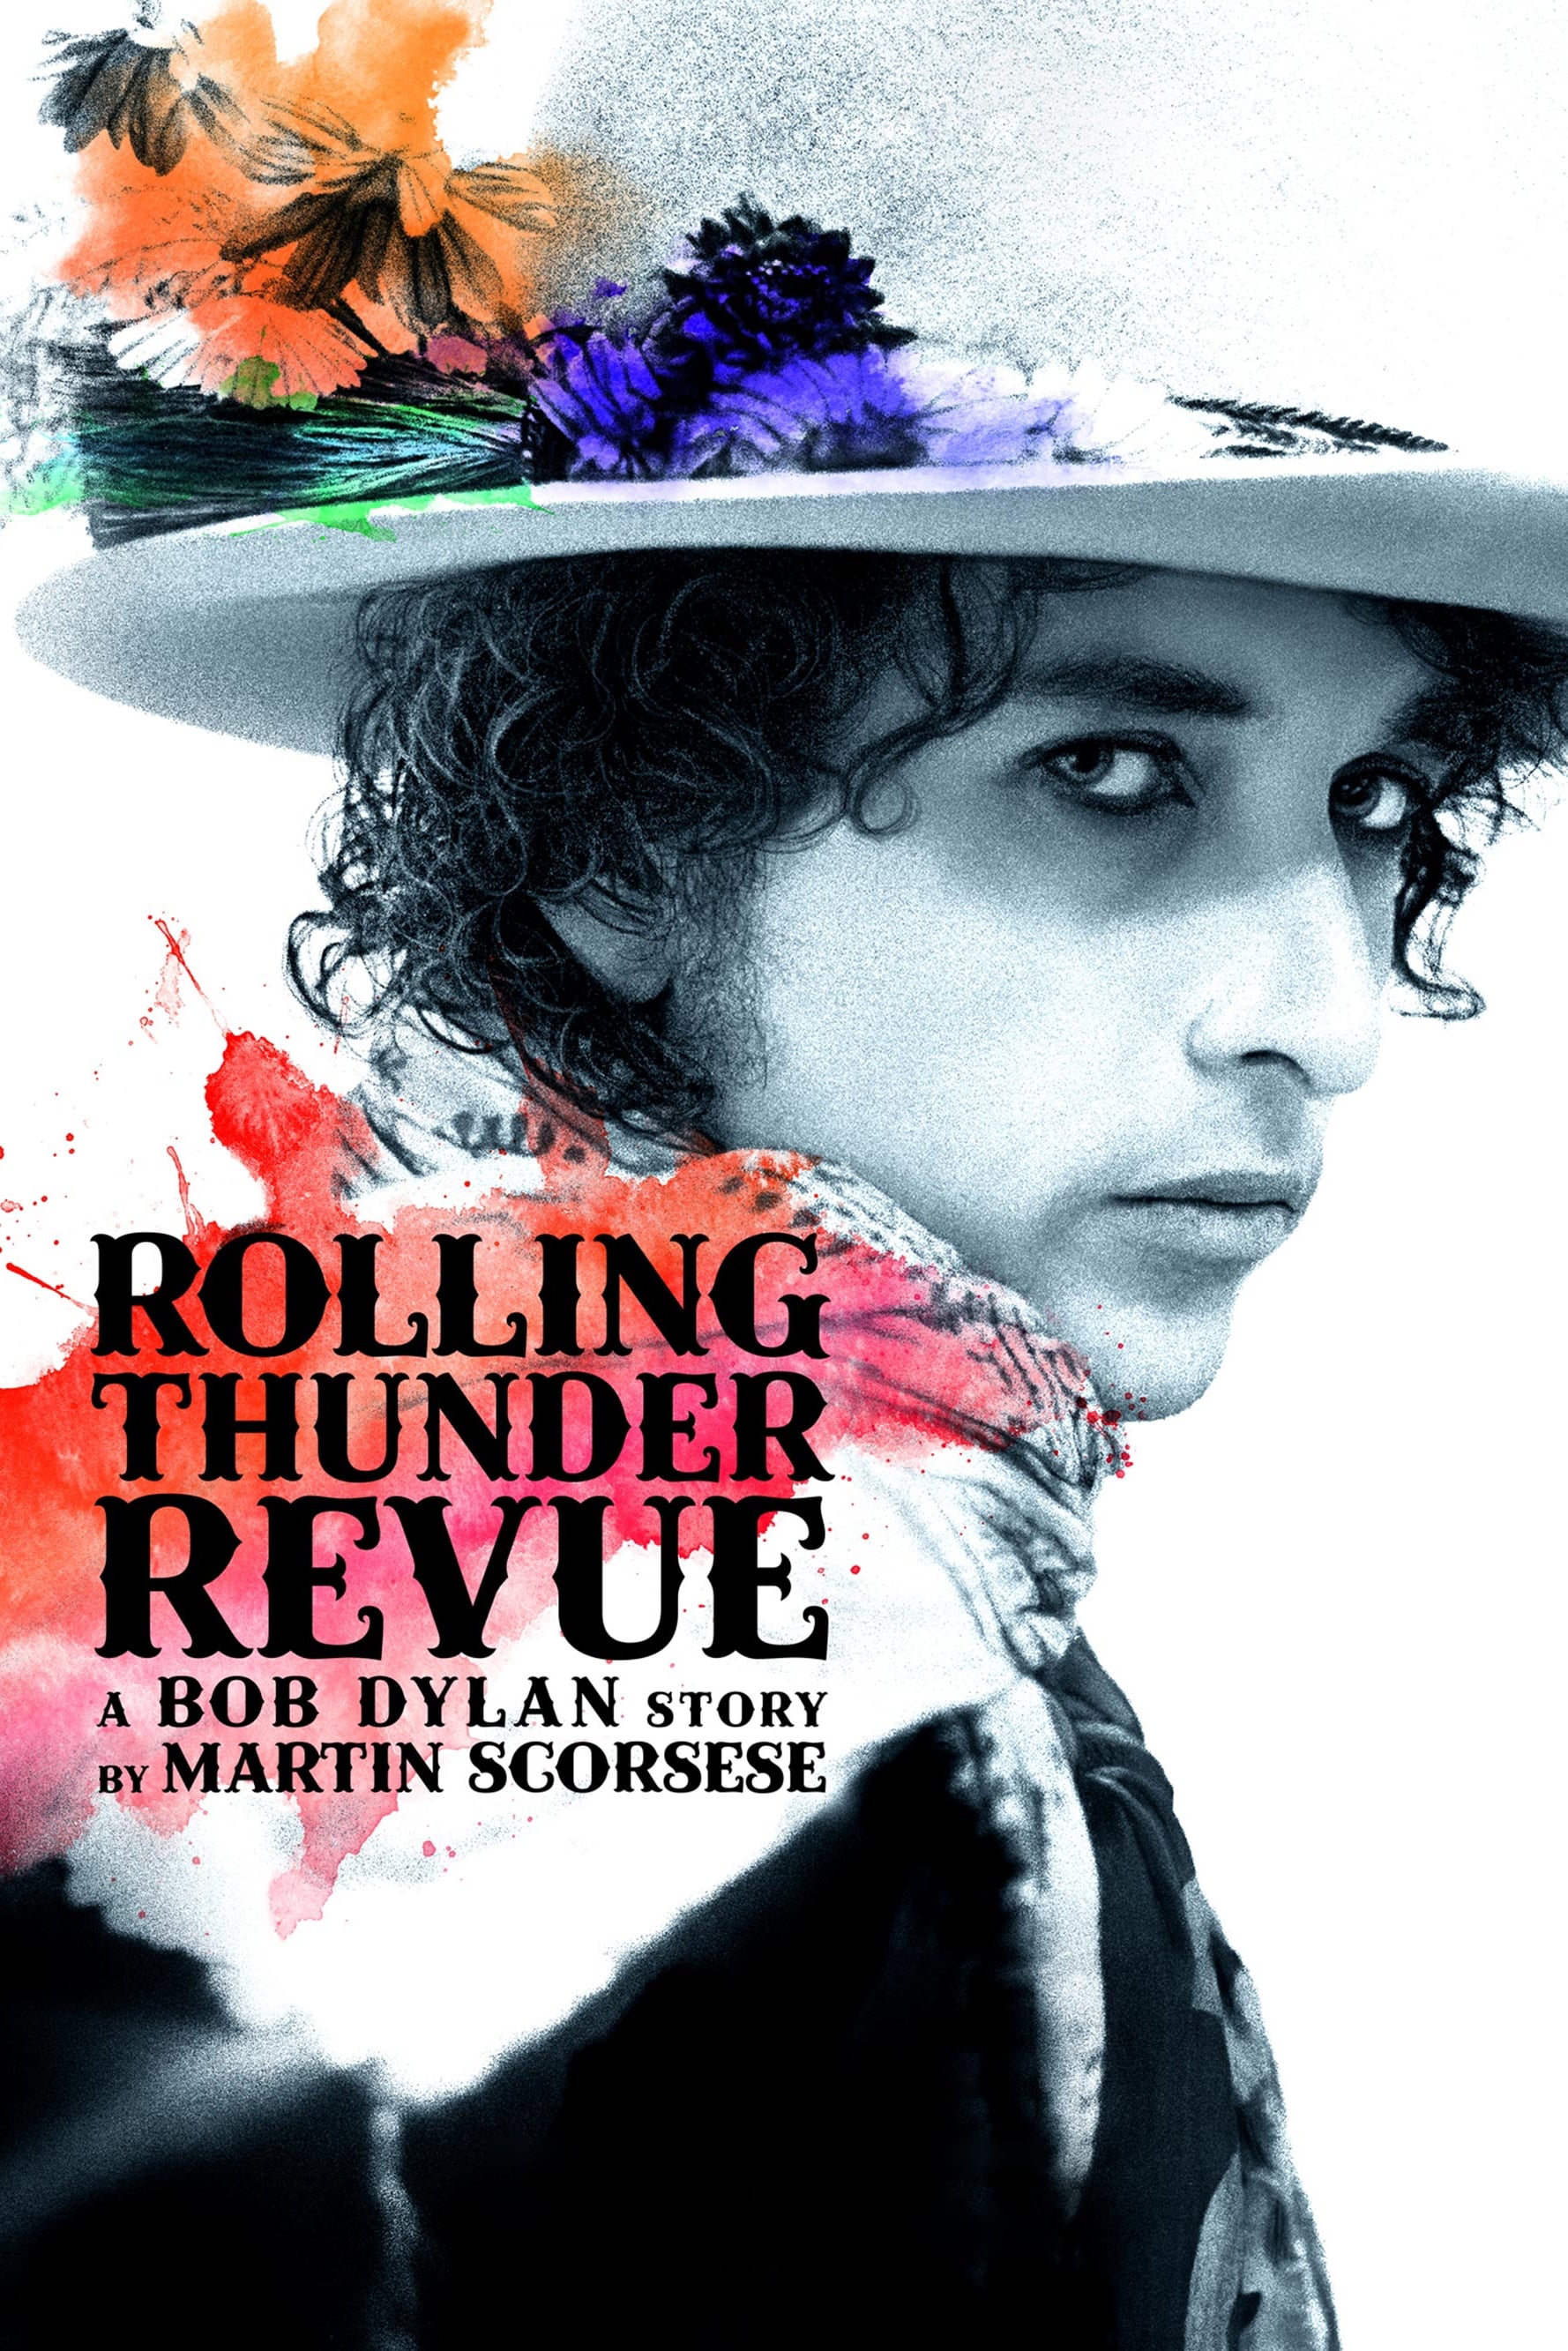 Rolling Thunder Revue: Câu chuyện của Bob Dylan kể bởi Martin Scorsese